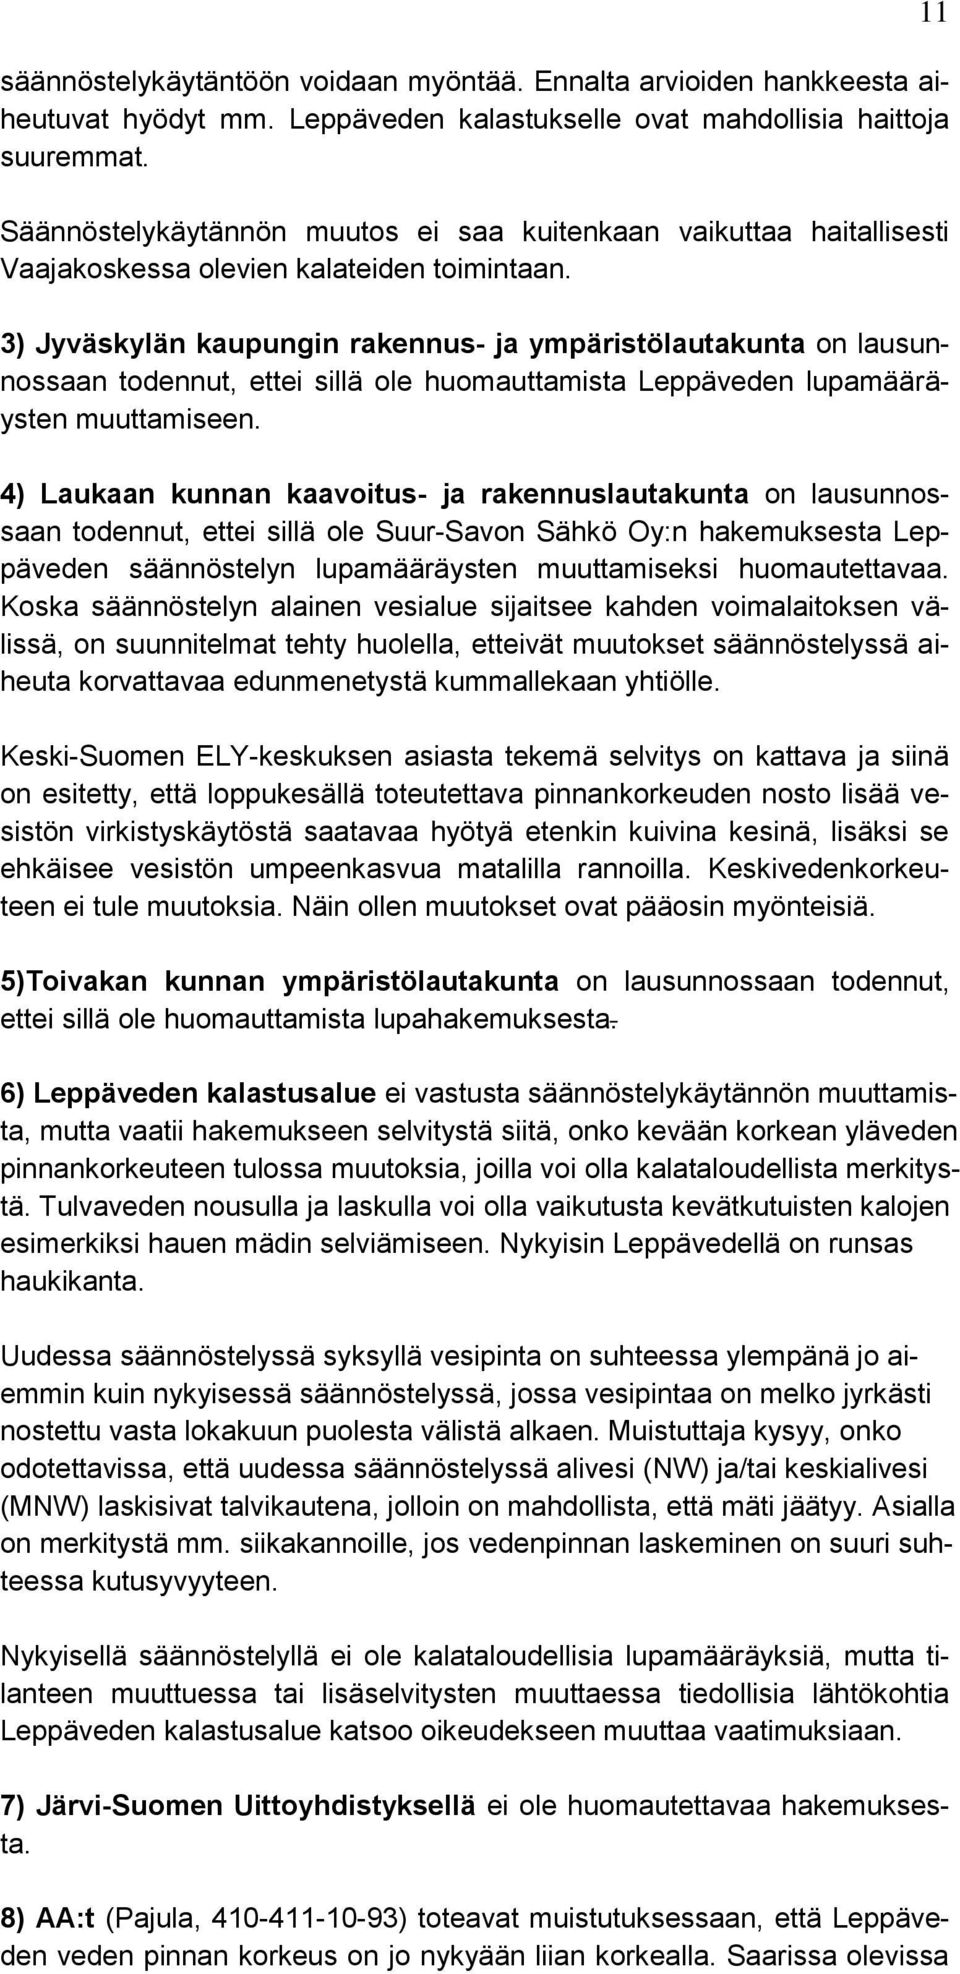 3) Jyväskylän kaupungin rakennus- ja ympäristölautakunta on lausunnossaan todennut, ettei sillä ole huomauttamista Leppäveden lupamääräysten muuttamiseen.